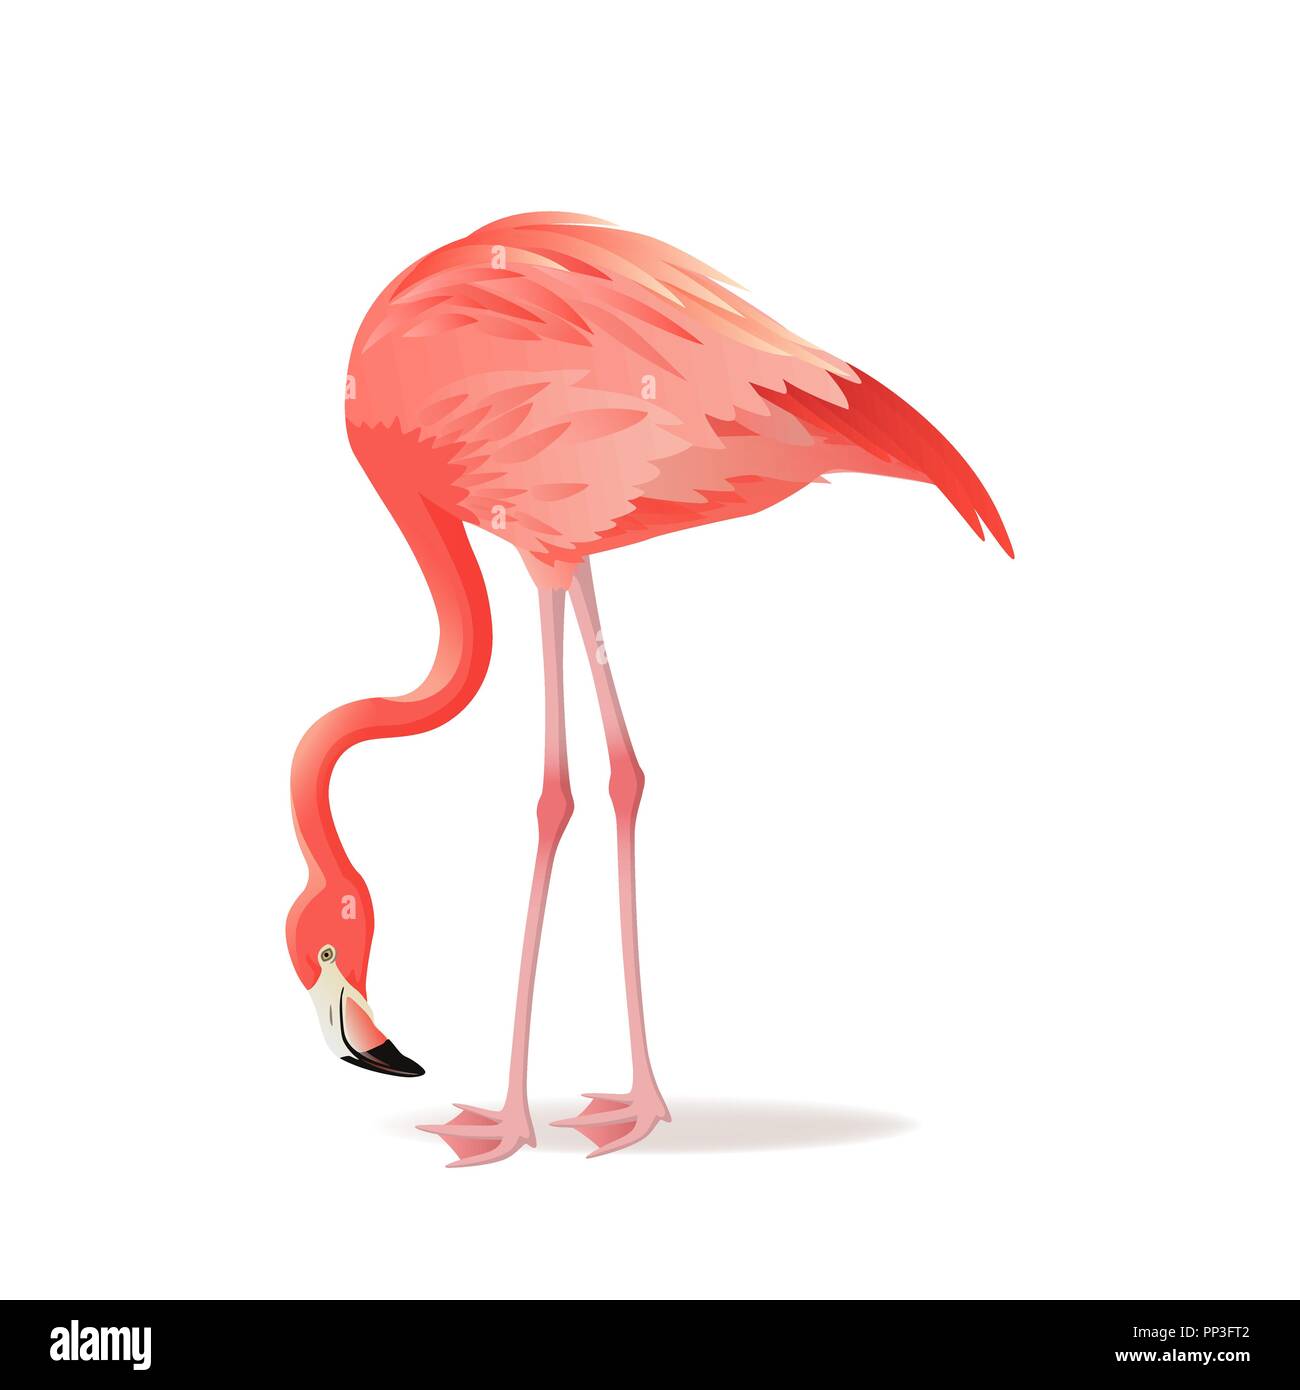 Rot und rosa Flamingo Vector Illustration. Exotischen Vogel stehen, dekorative Elemente Sammlung. Flamingo isoliert auf weißem Hintergrund Stock Vektor